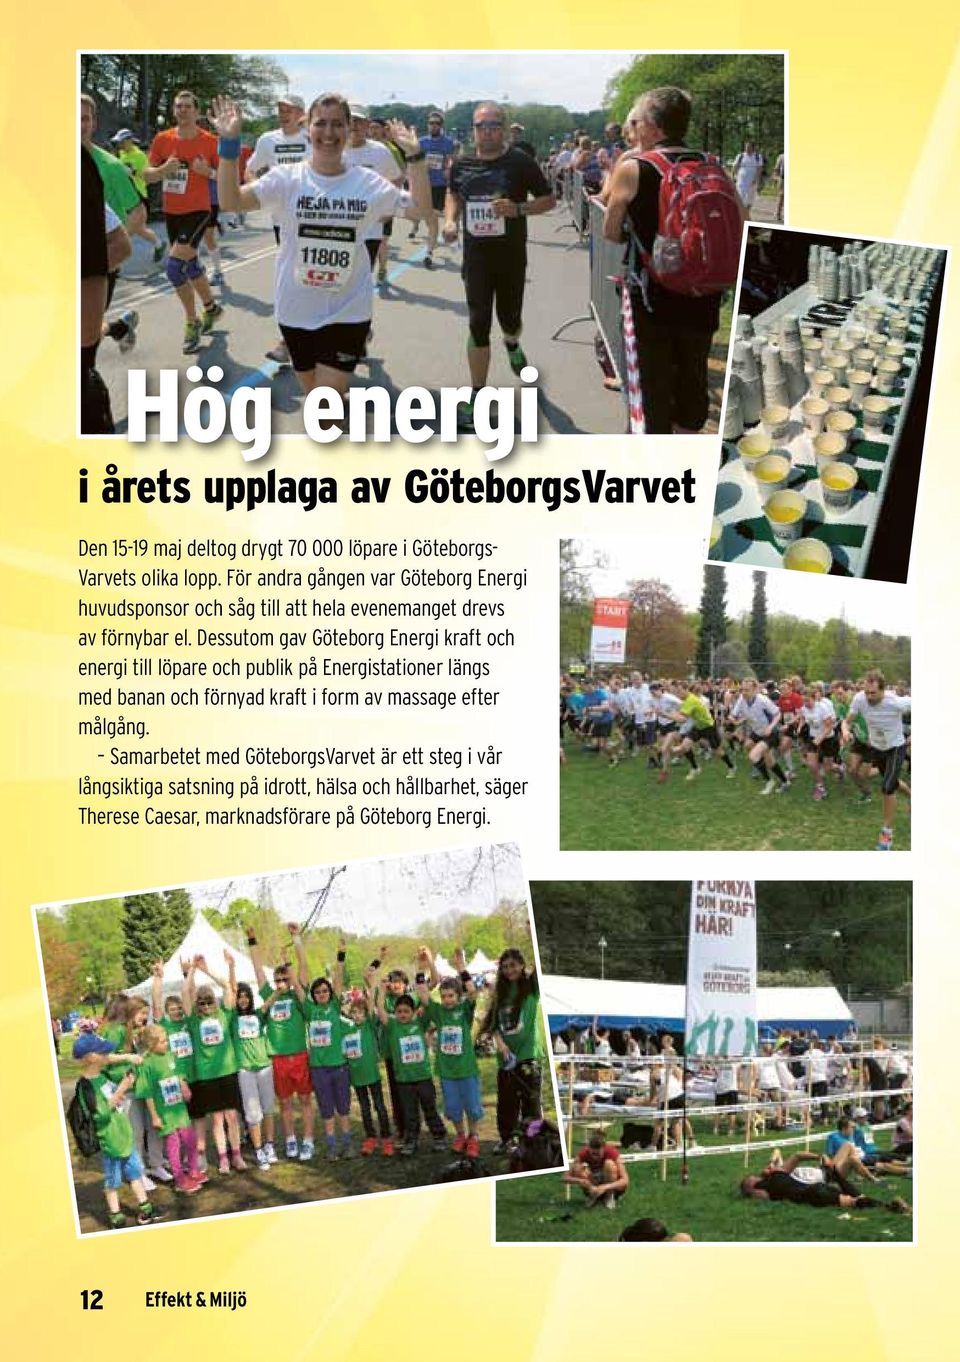 Dessutom gav Göteborg Energi kraft och energi till löpare och publik på Energistationer längs med banan och förnyad kraft i form av massage